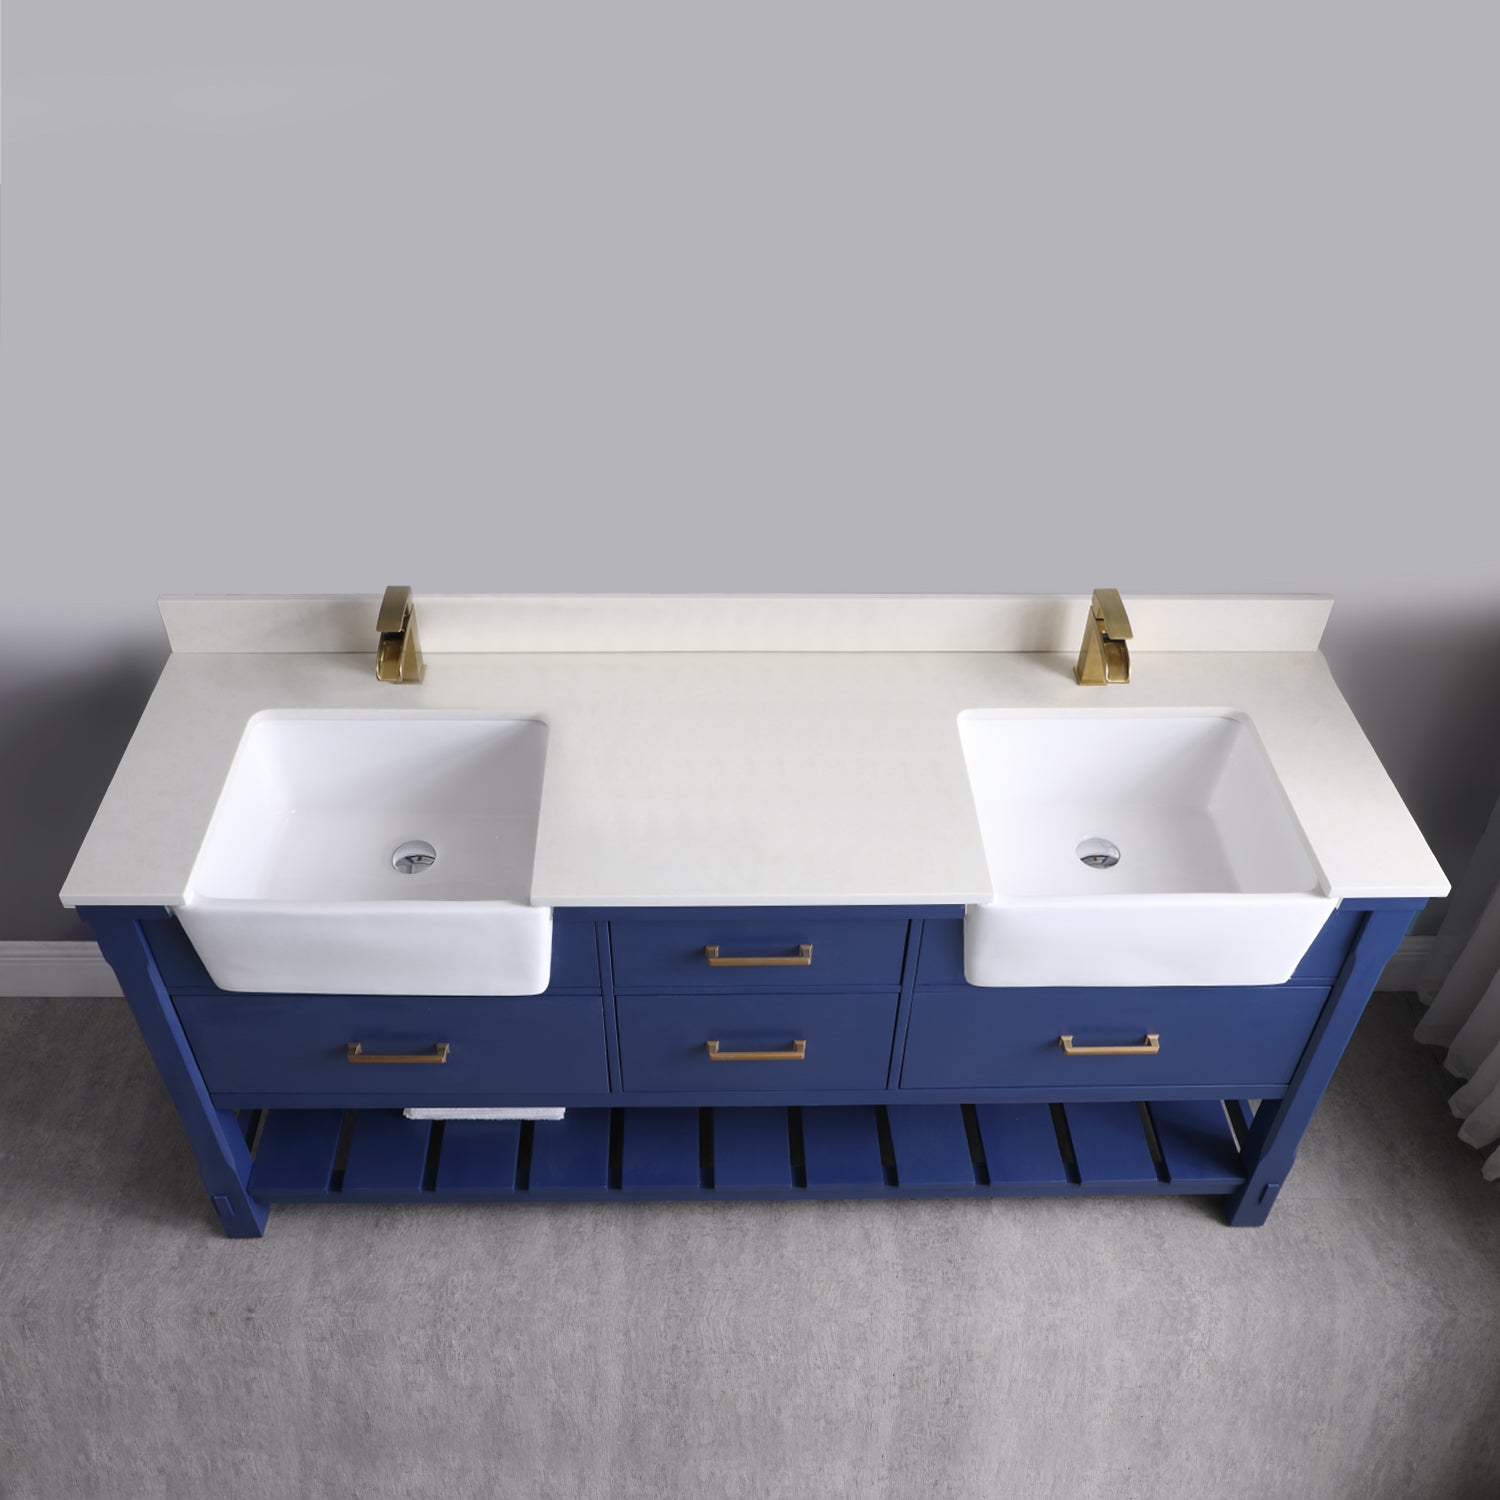 Georgia 72" Double Bathroom Vanity Set with White Farmhouse Basins